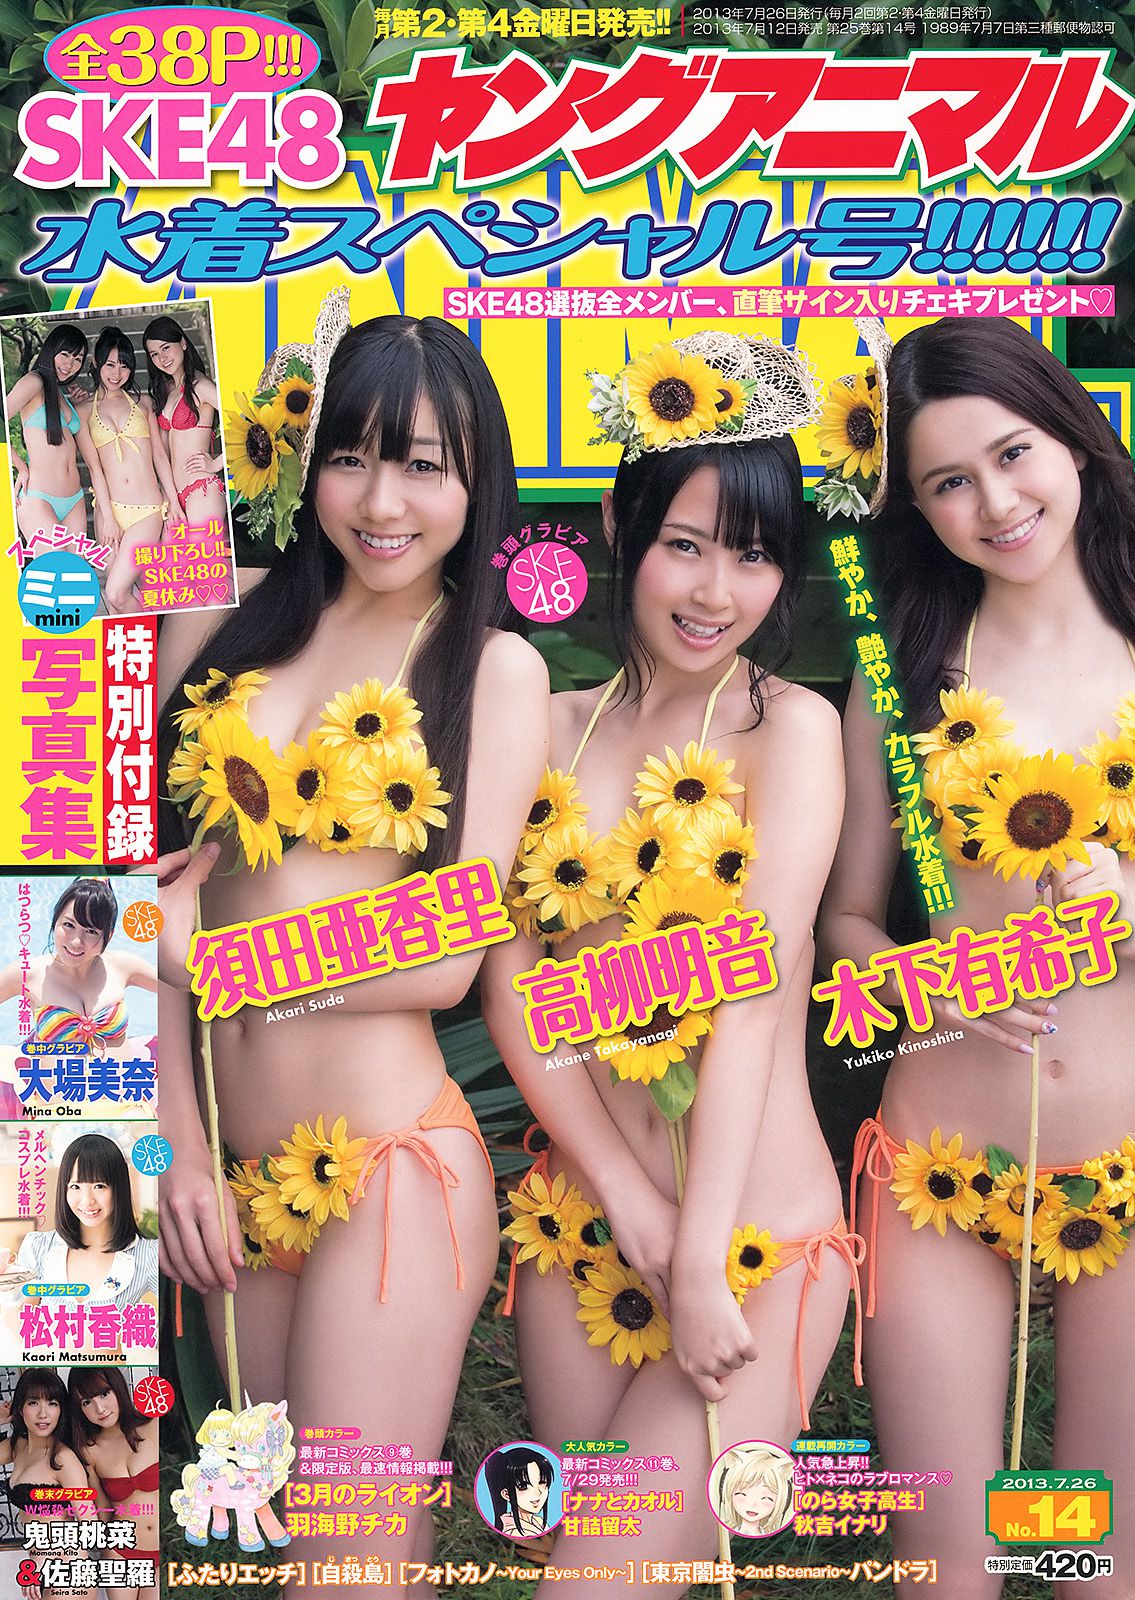 Порно журналы японии фото 70